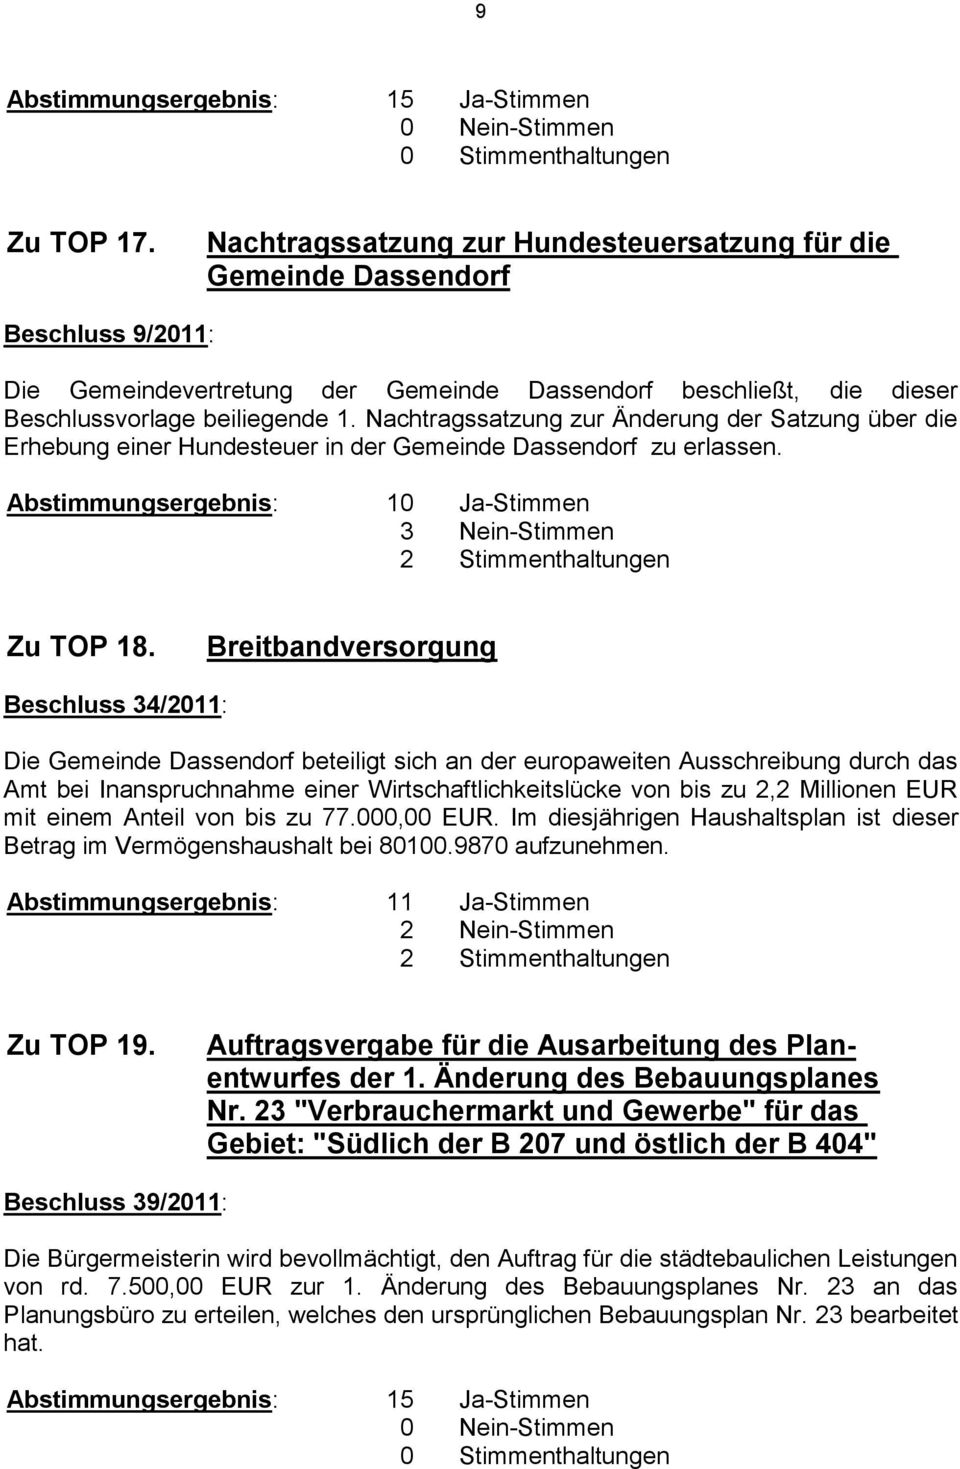 Breitbandversorgung Beschluss 34/2011: Die Gemeinde Dassendorf beteiligt sich an der europaweiten Ausschreibung durch das Amt bei Inanspruchnahme einer Wirtschaftlichkeitslücke von bis zu 2,2